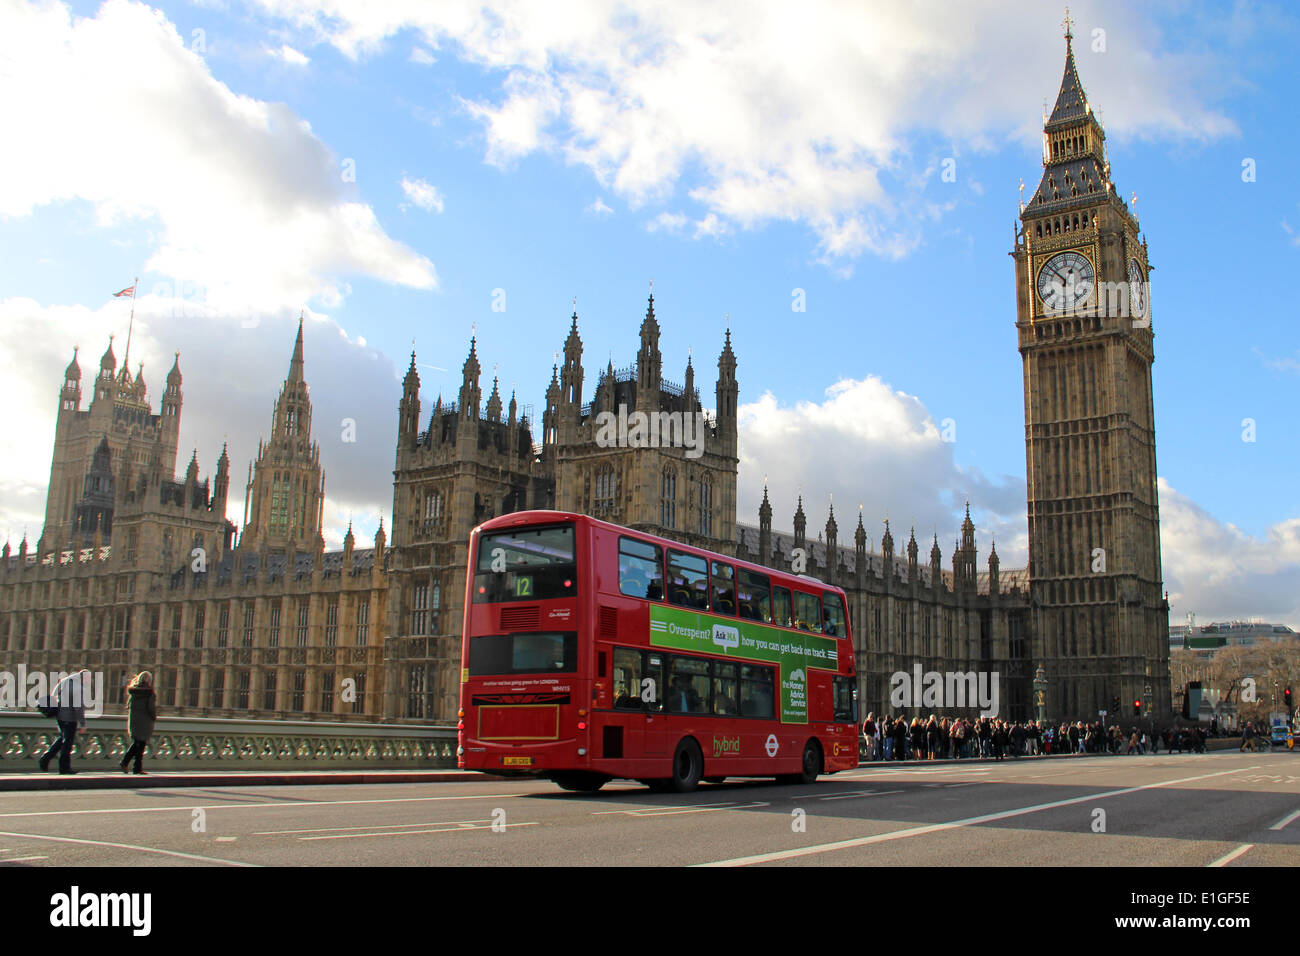 Londres : Palais de Westminster avec Big Ben (Elizabeth Tower), 2014/01/11 Banque D'Images